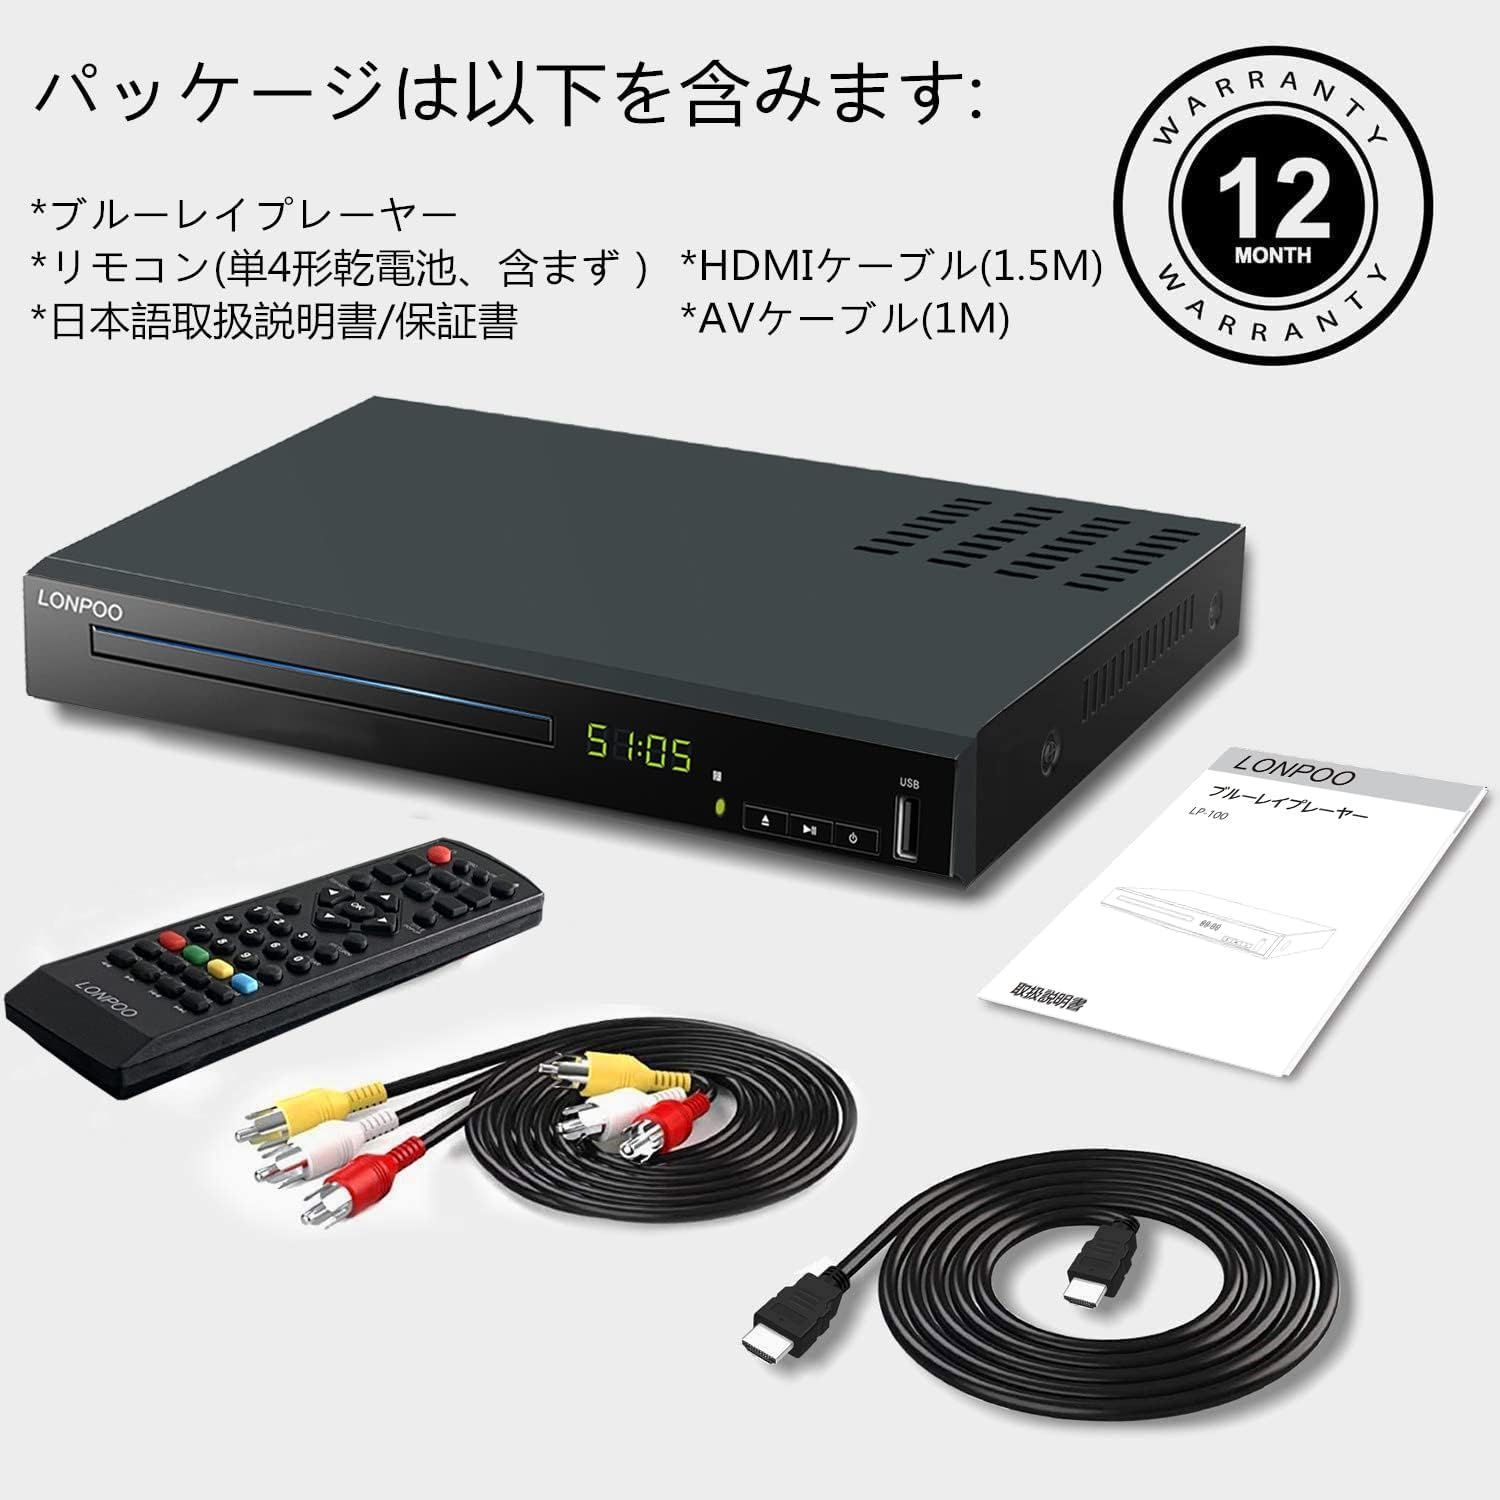 ブルーレイプレーヤー フルHD1080p DVDプレーヤー CPRM再生可能 HDMI ...